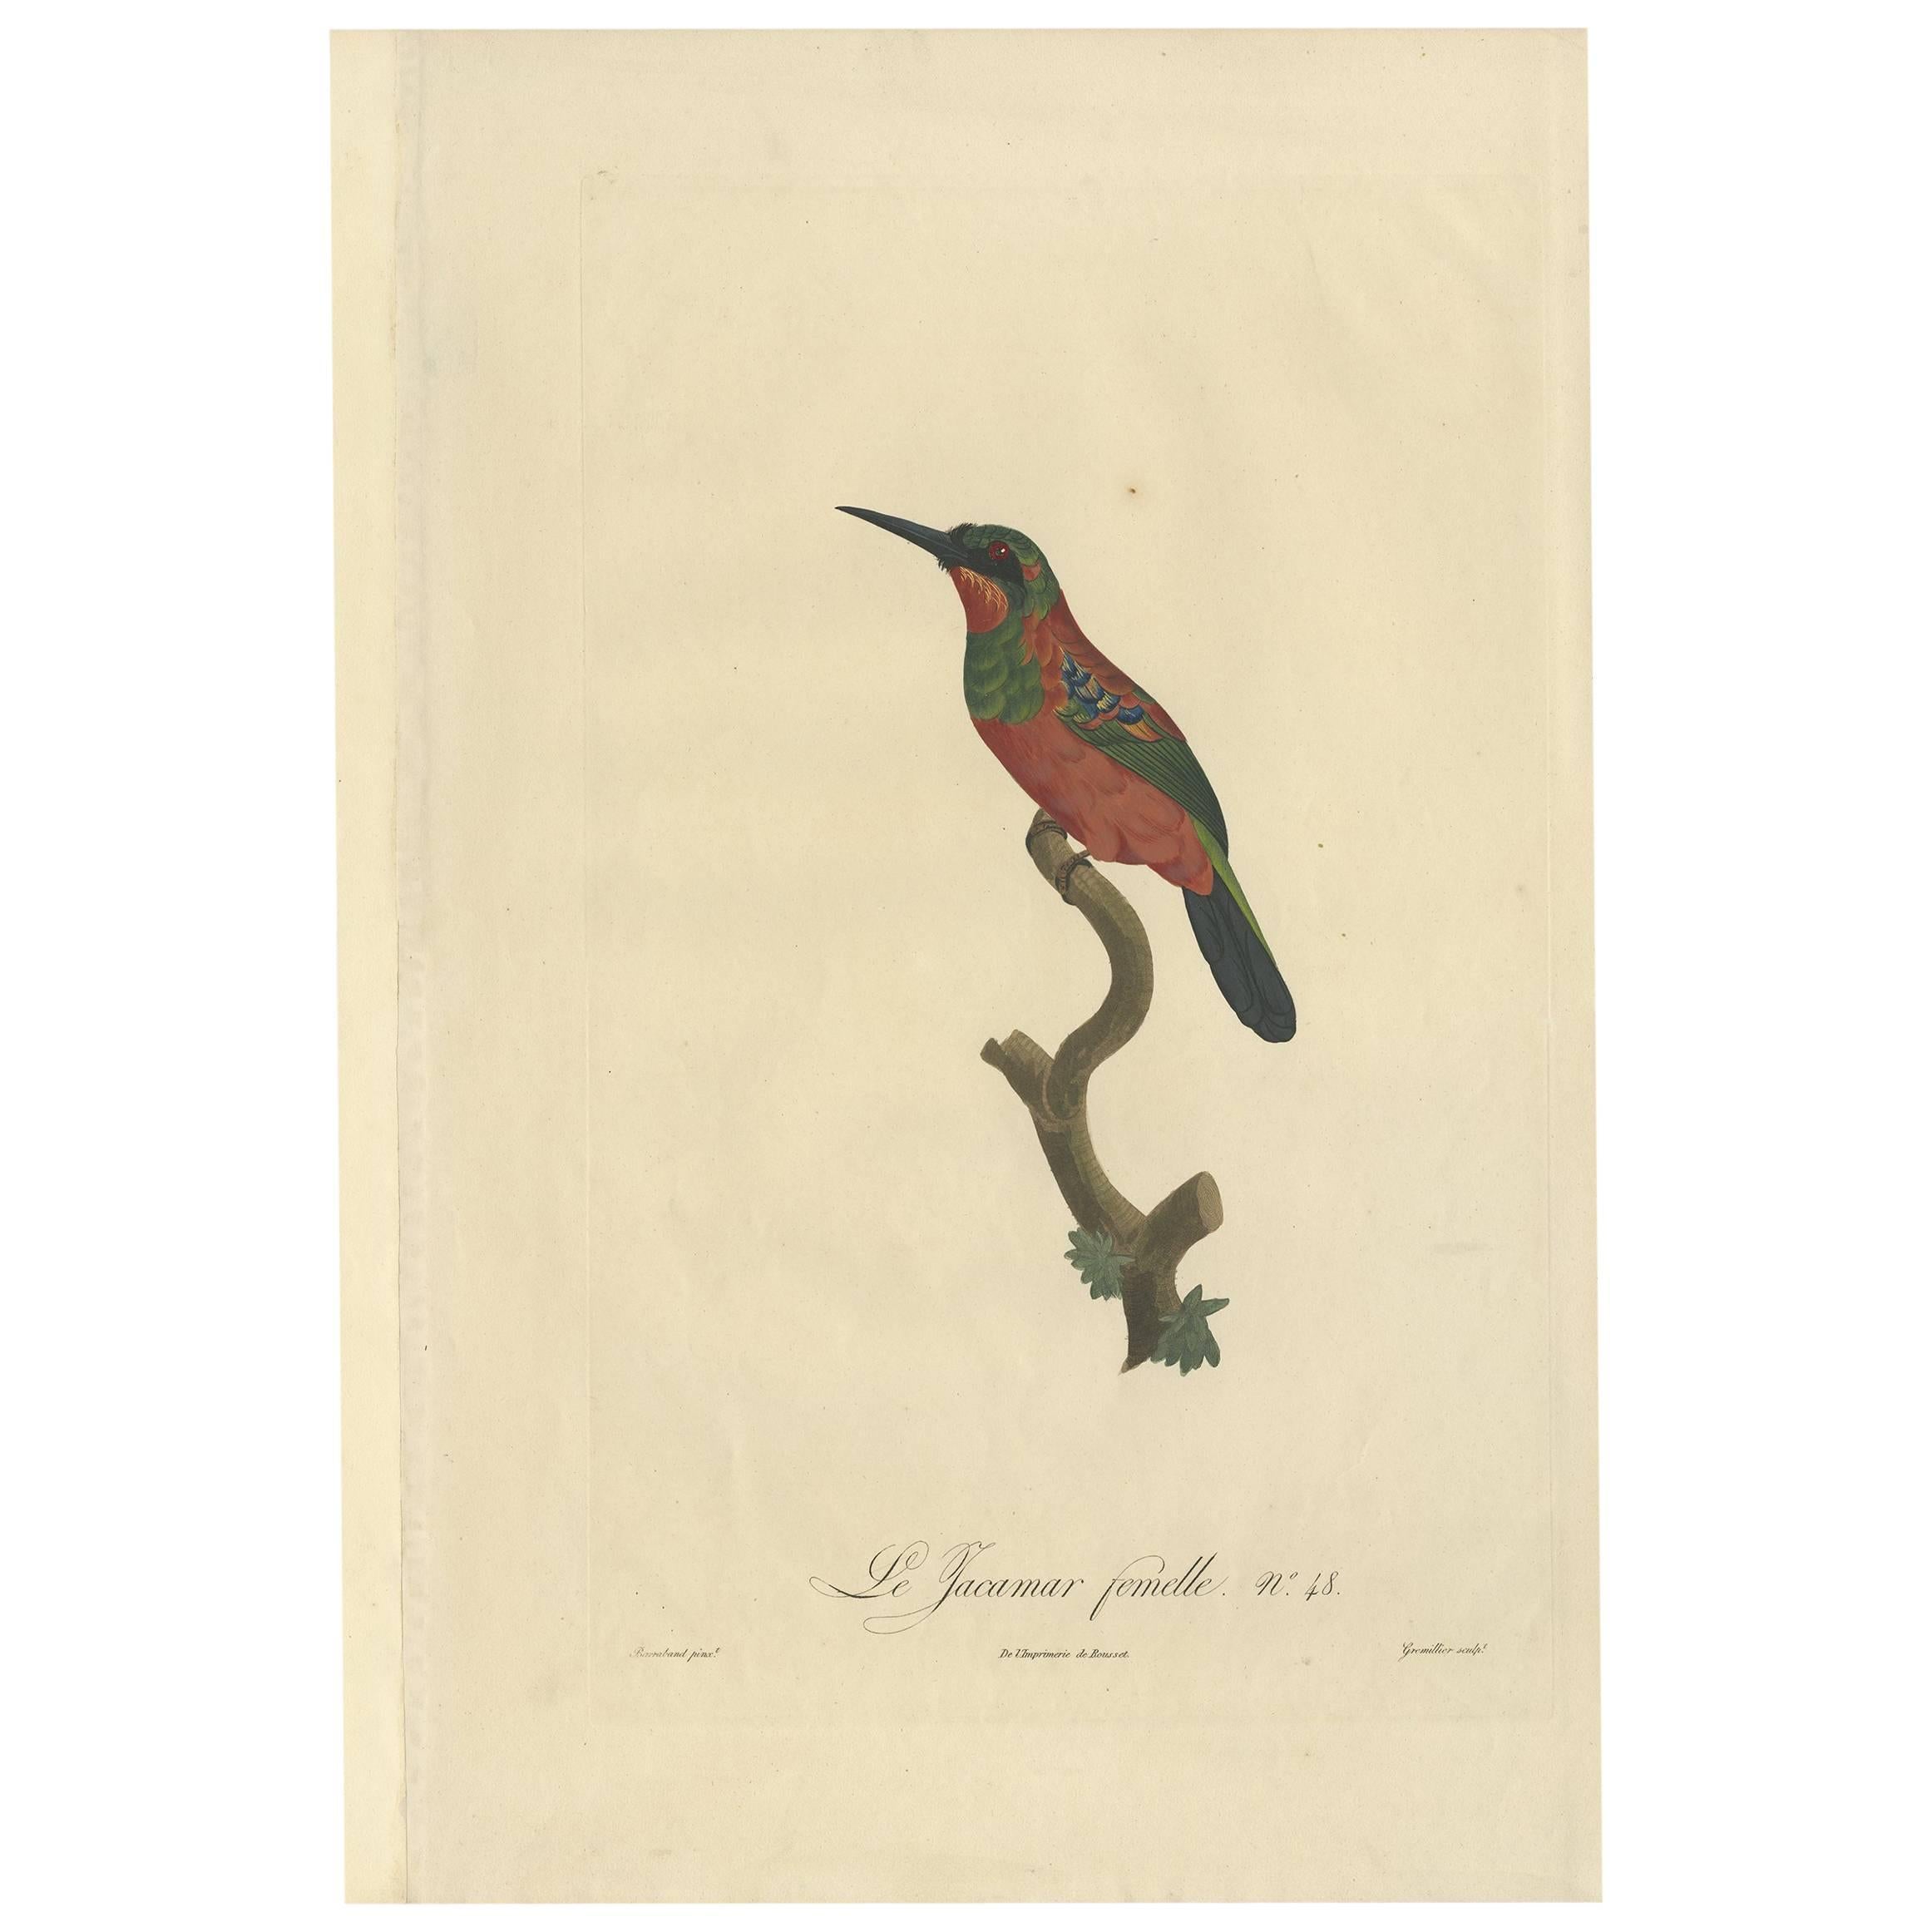 Superbe impression d'oiseau ancien coloré à la main d'une femme Jacamar par Barraband, vers 1805